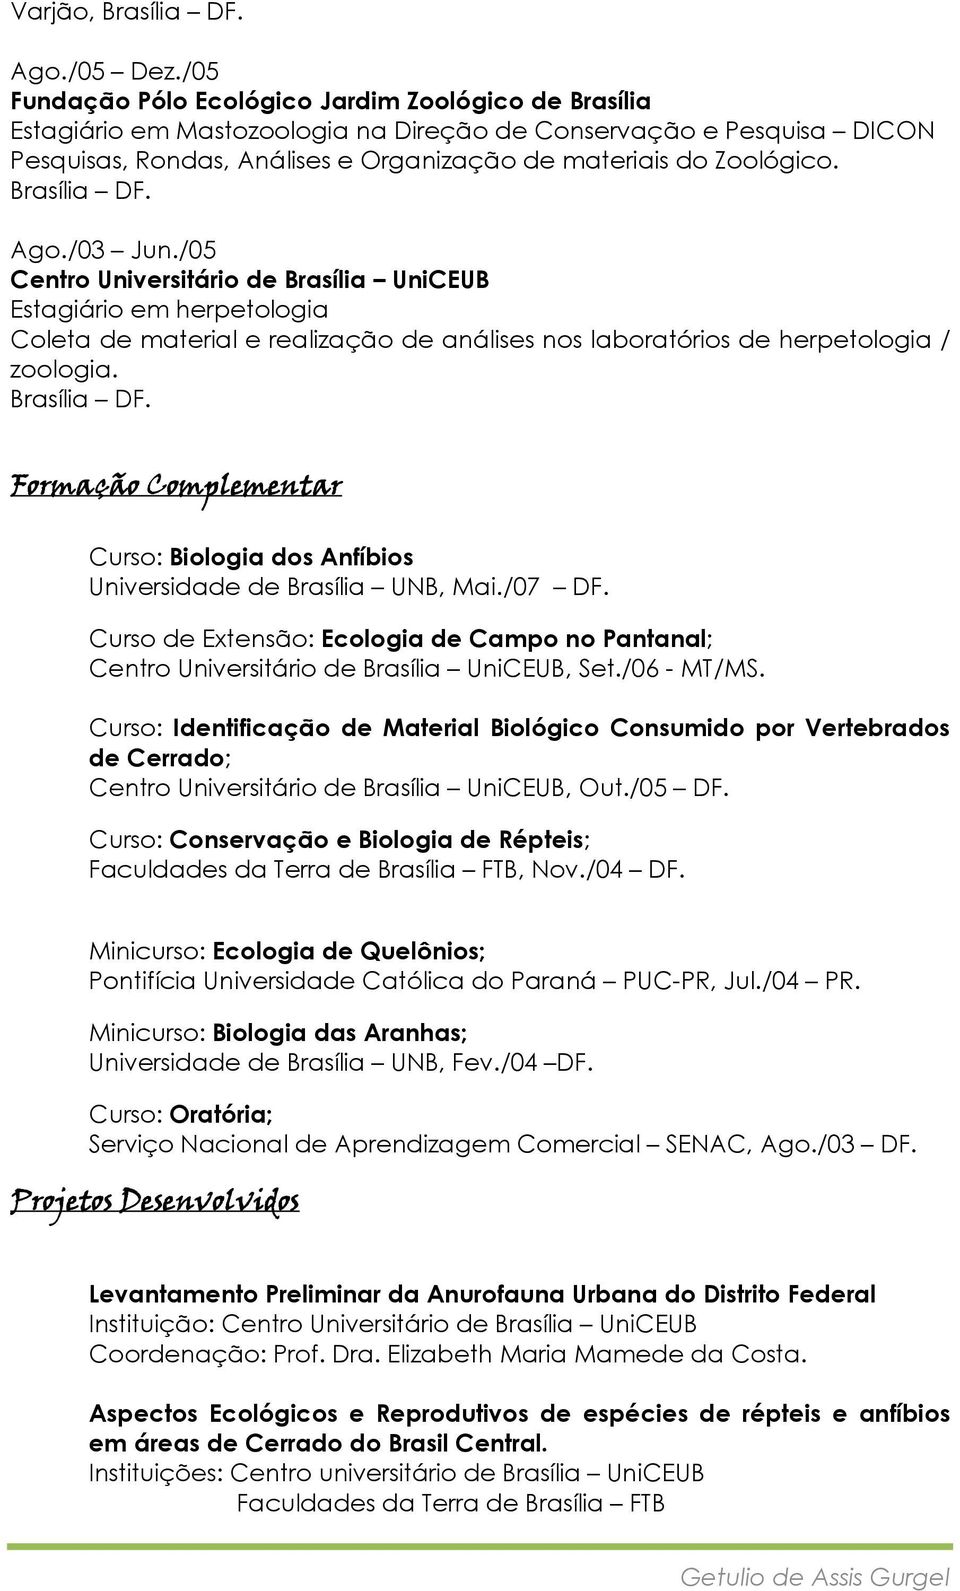 Ago./03 Jun./05 Centro Universitário de Brasília UniCEUB Estagiário em herpetologia Coleta de material e realização de análises nos laboratórios de herpetologia / zoologia.